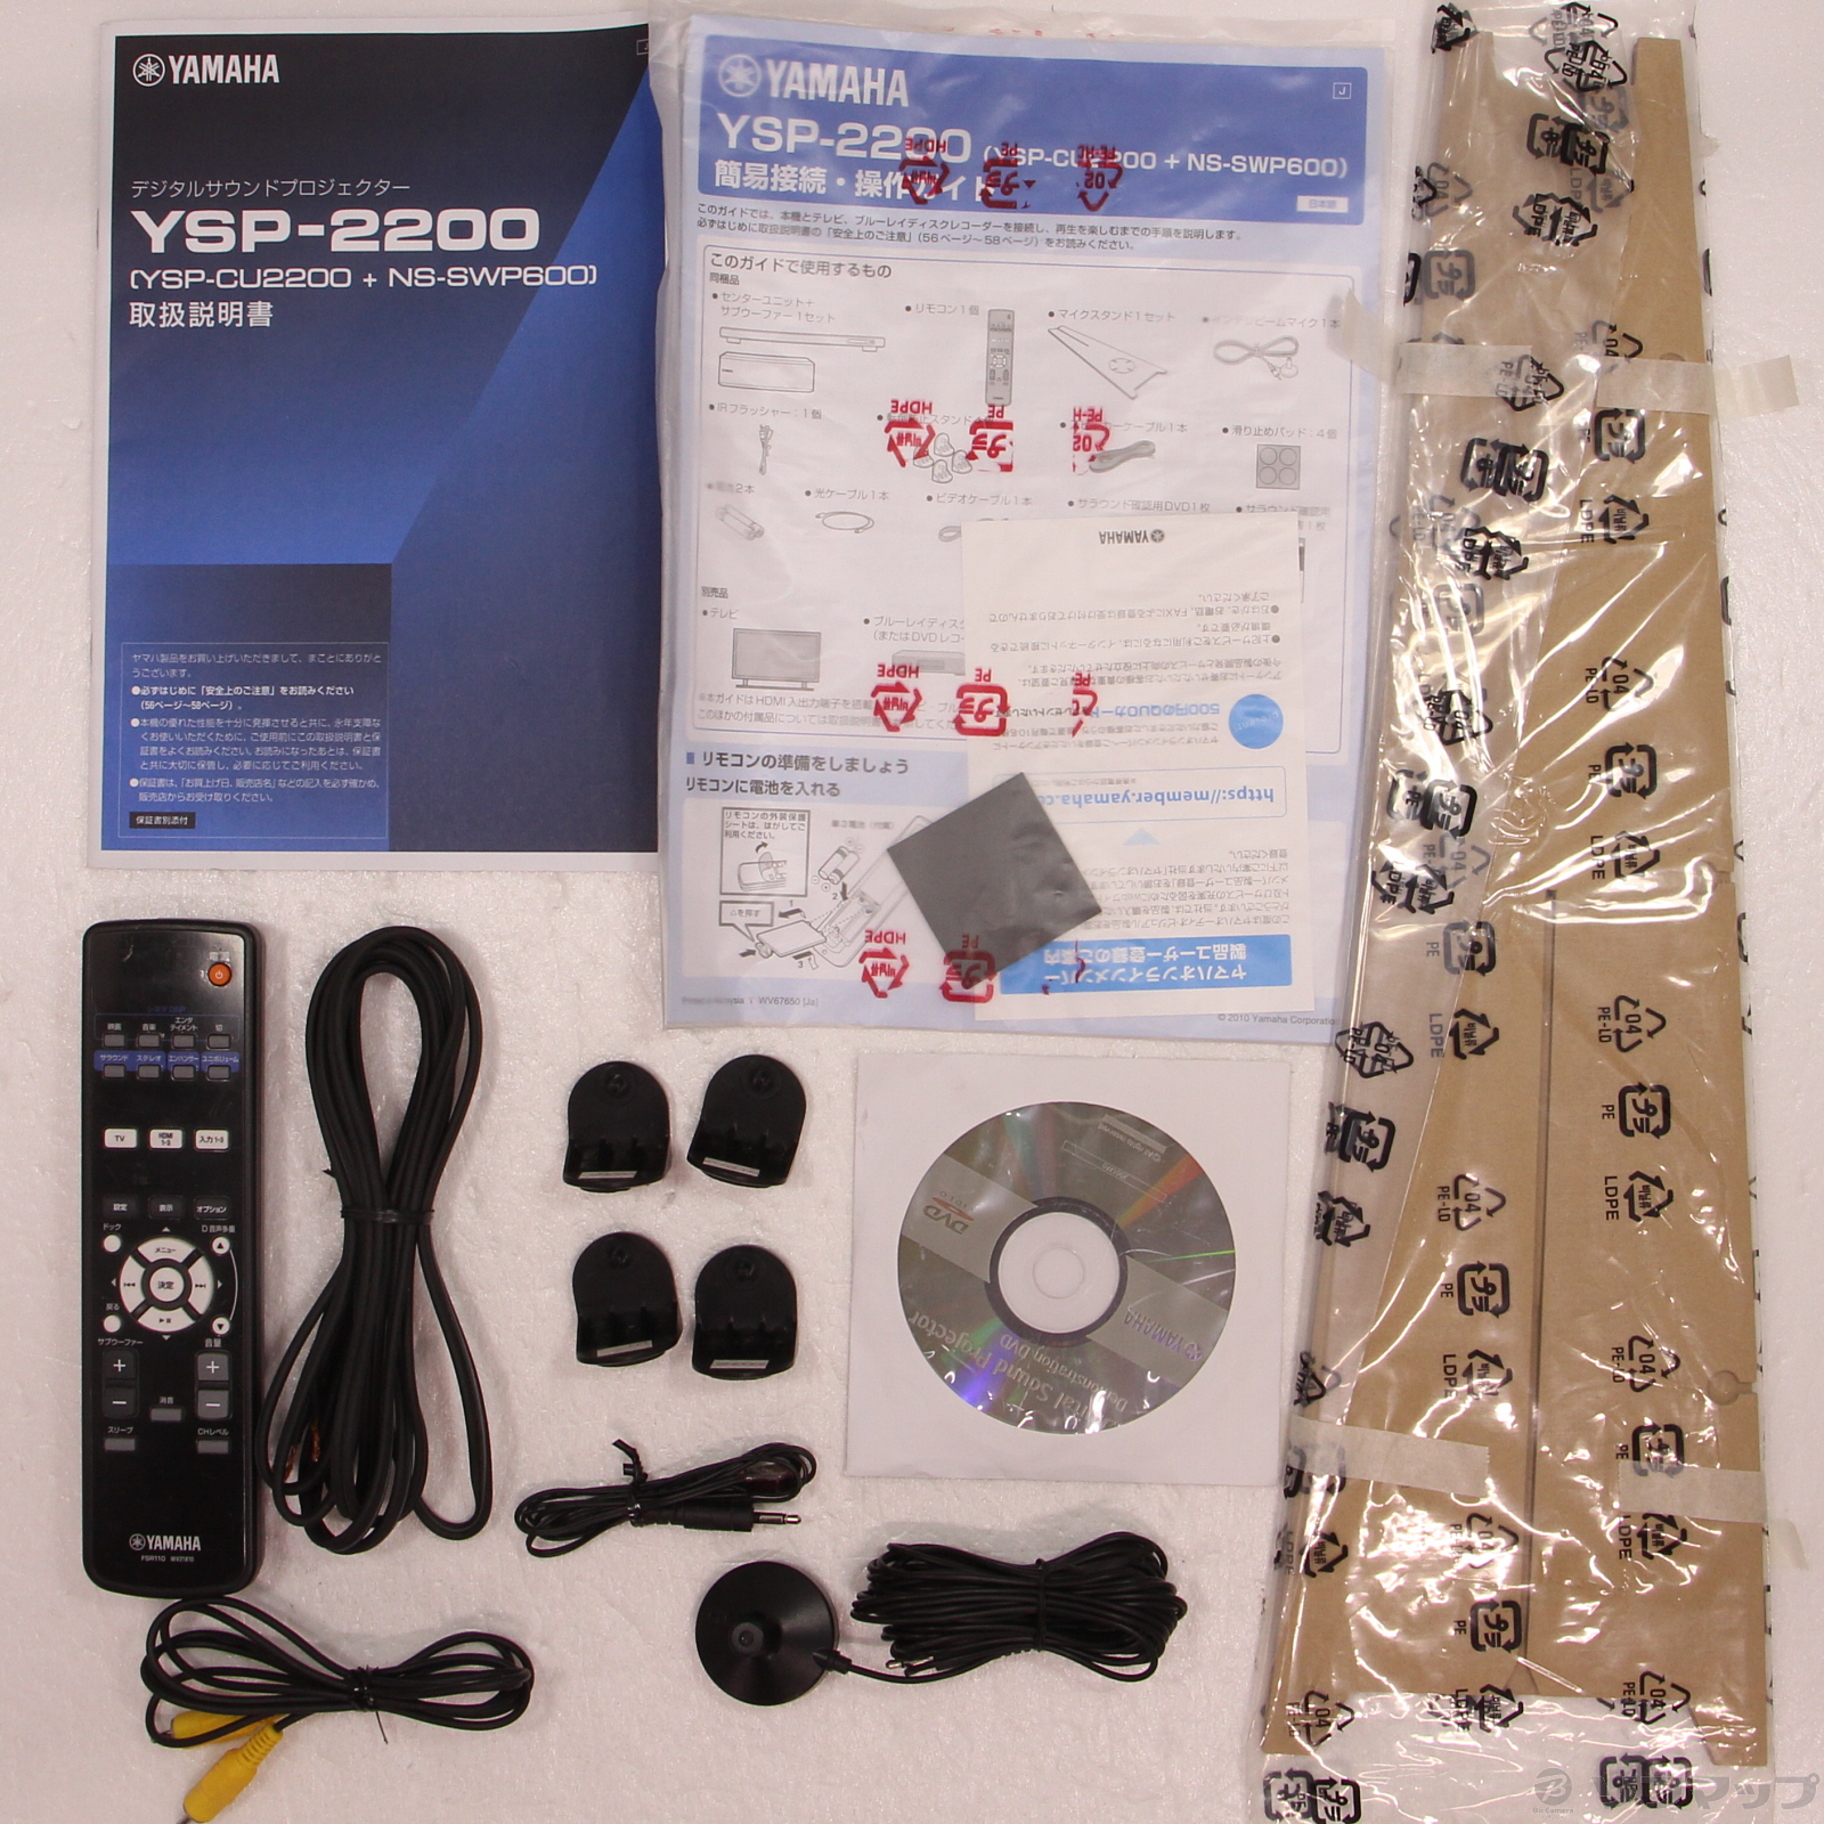 YSP-2200 7.1chデジタルサウンドプロジェクター